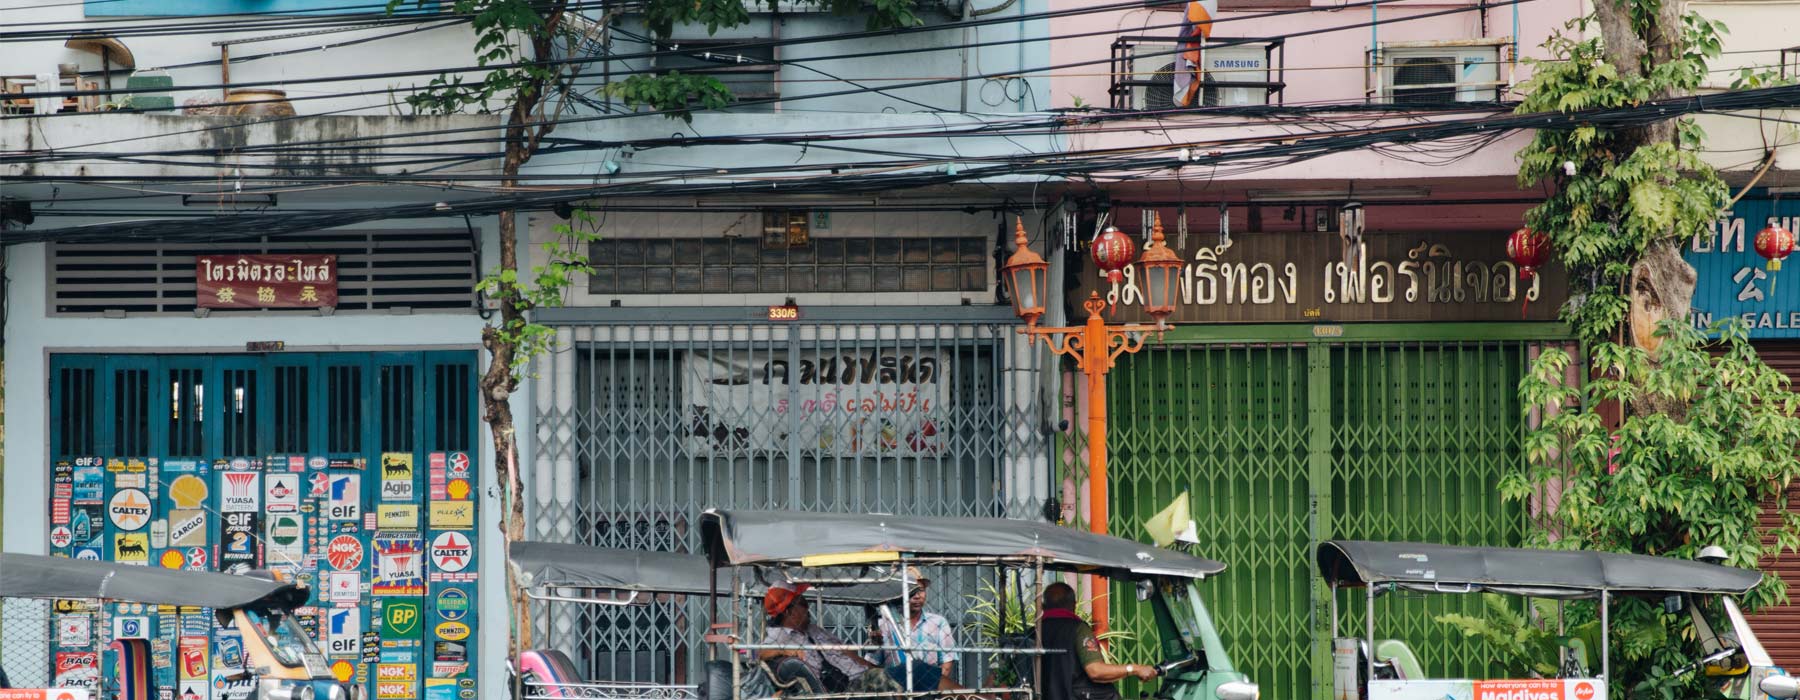 Bangkok and Beyond<br class="hidden-md hidden-lg" /> Holidays